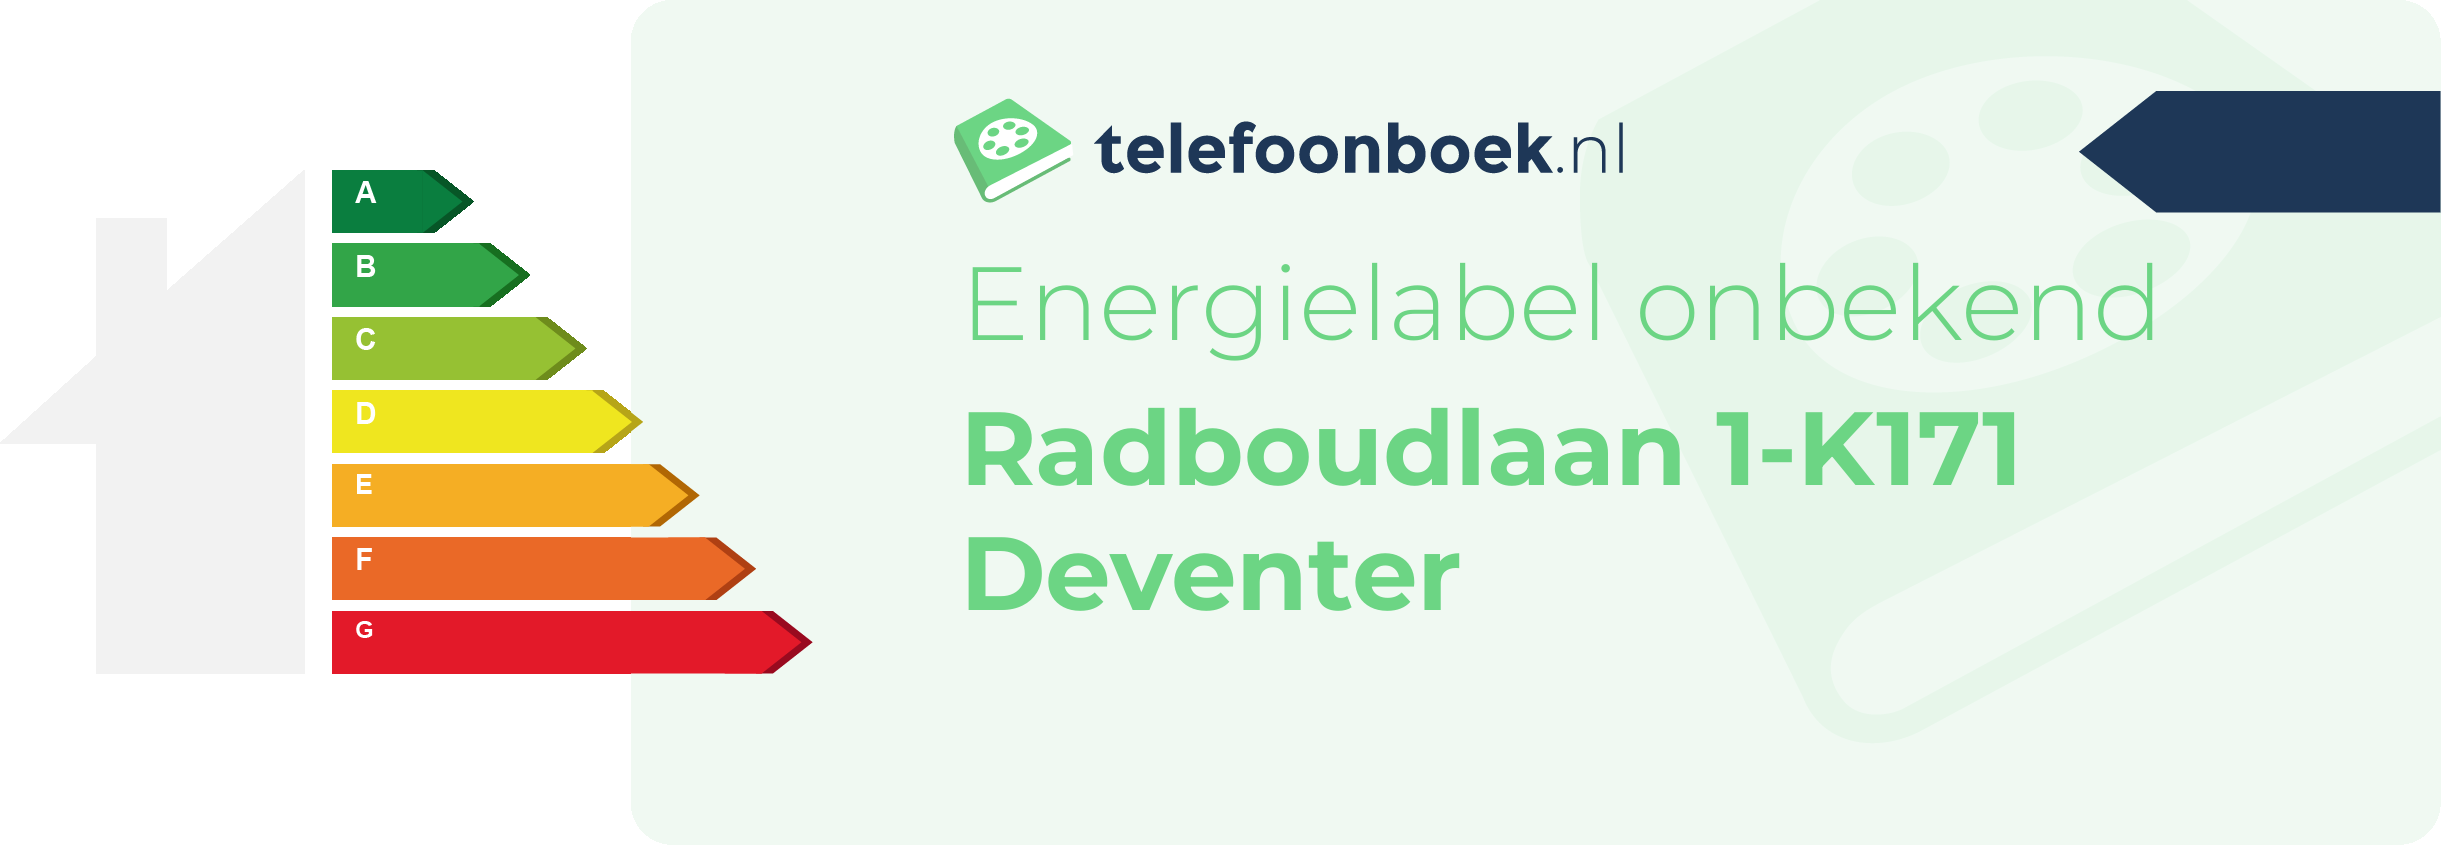 Energielabel Radboudlaan 1-K171 Deventer